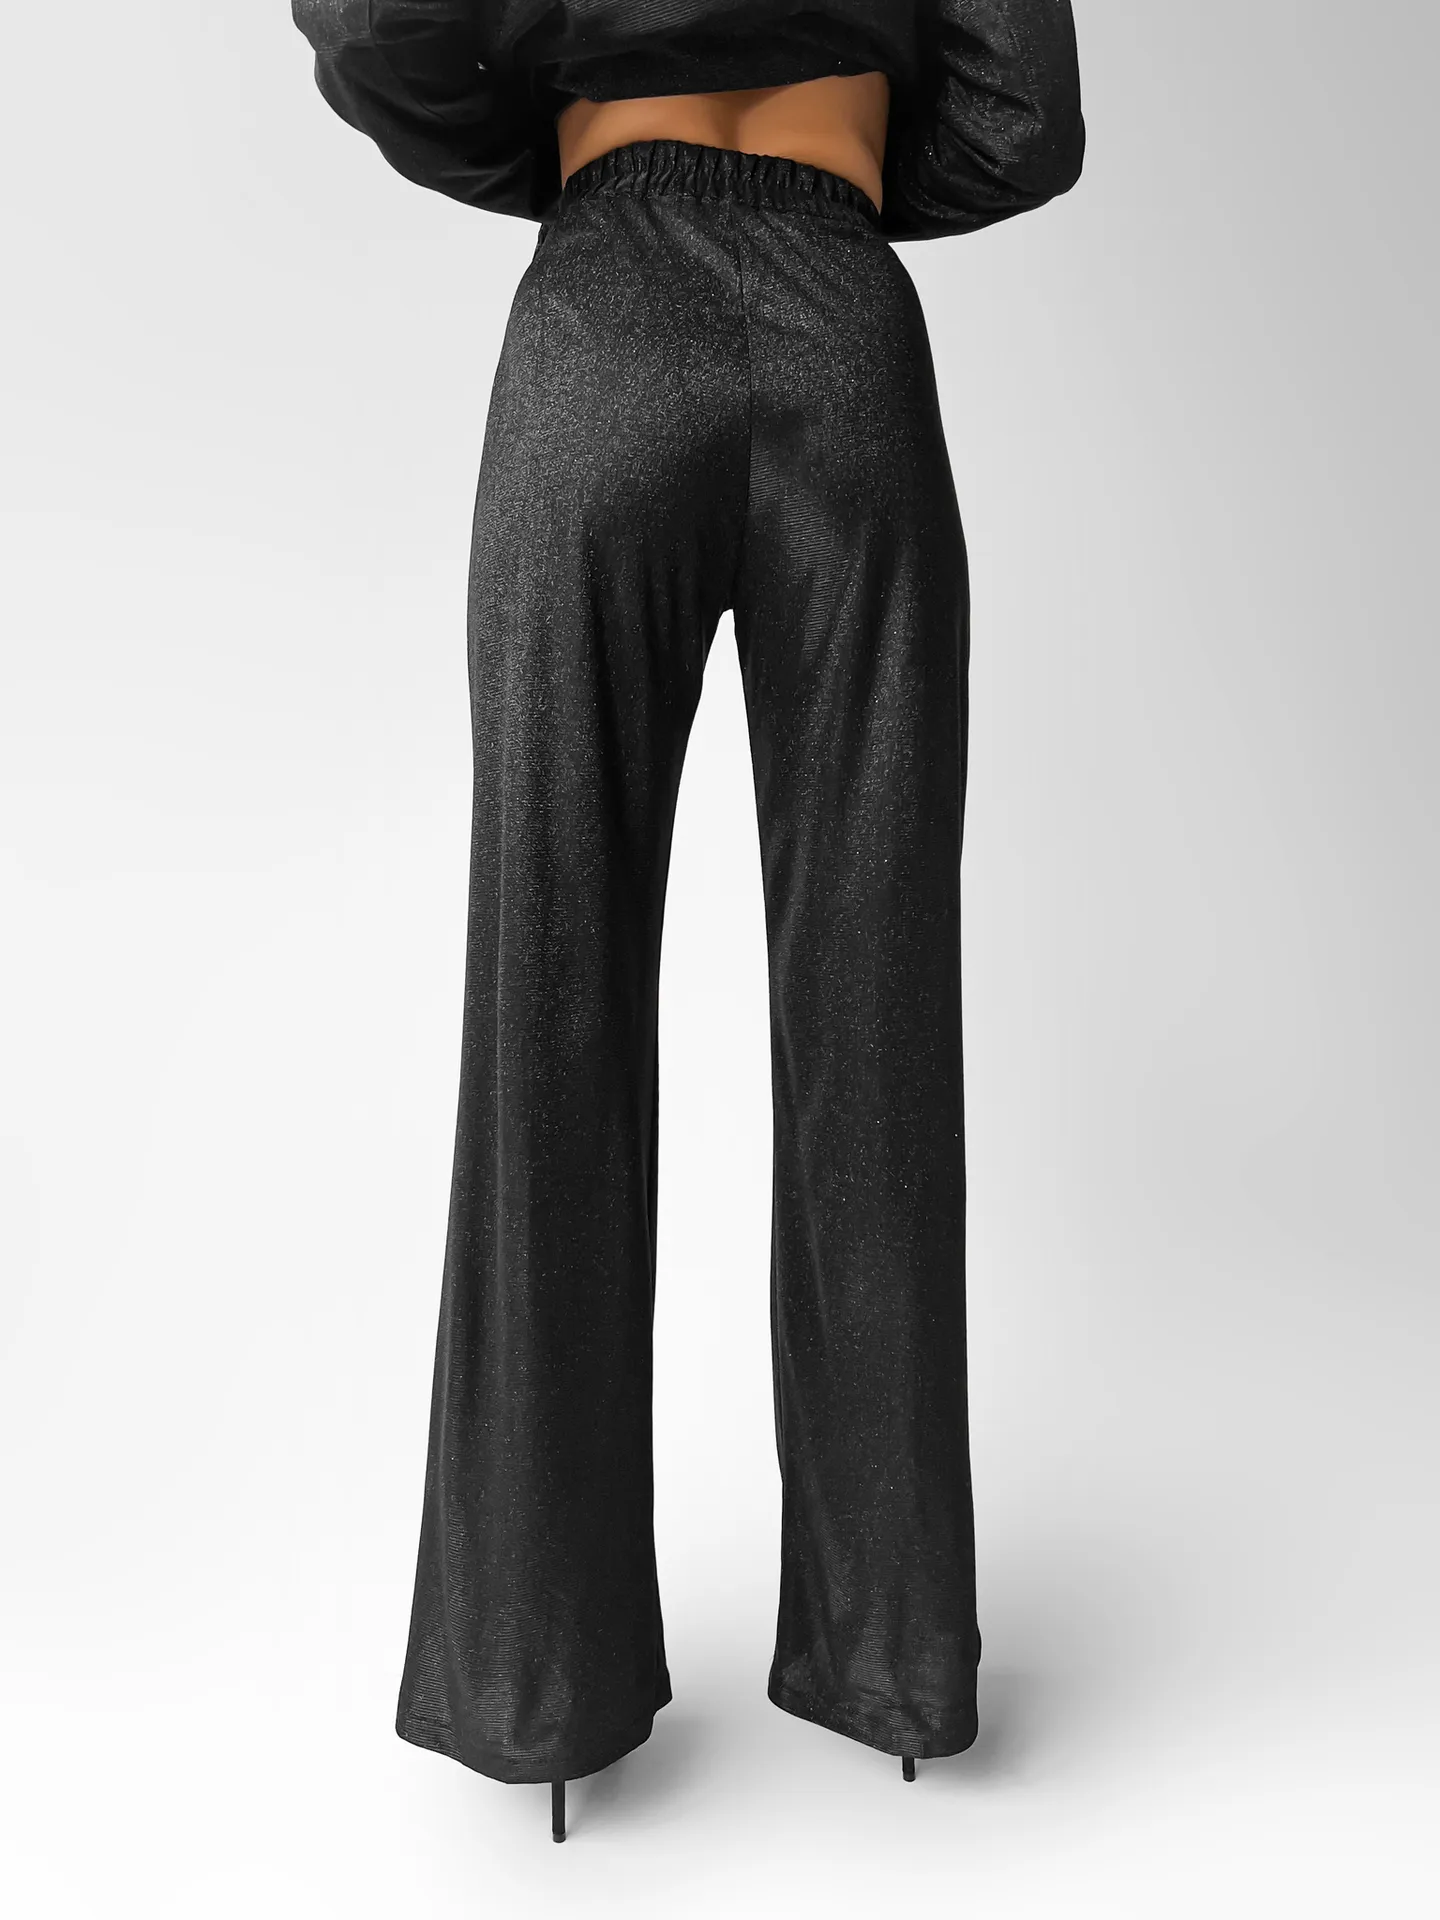 Костюм-тройка Pudra из топа на лямках свободного пиджака и расклешенных брюк на резинке черный